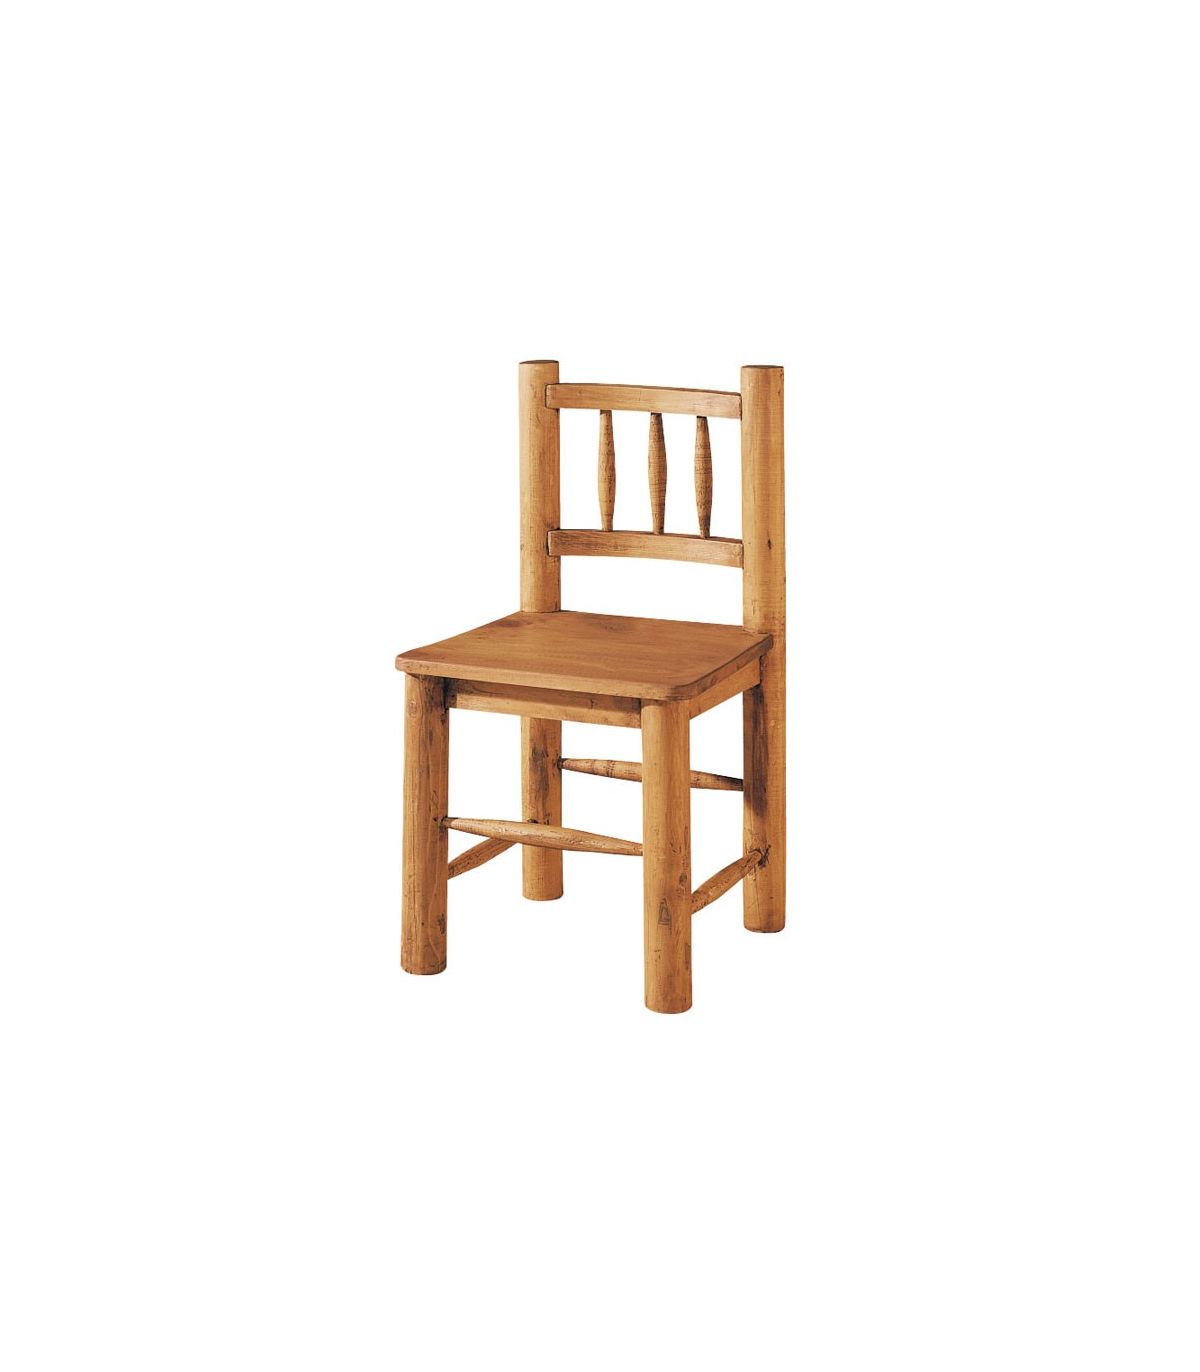 sillas madera de pino rusticas, tienda online muebles rusticos economicos